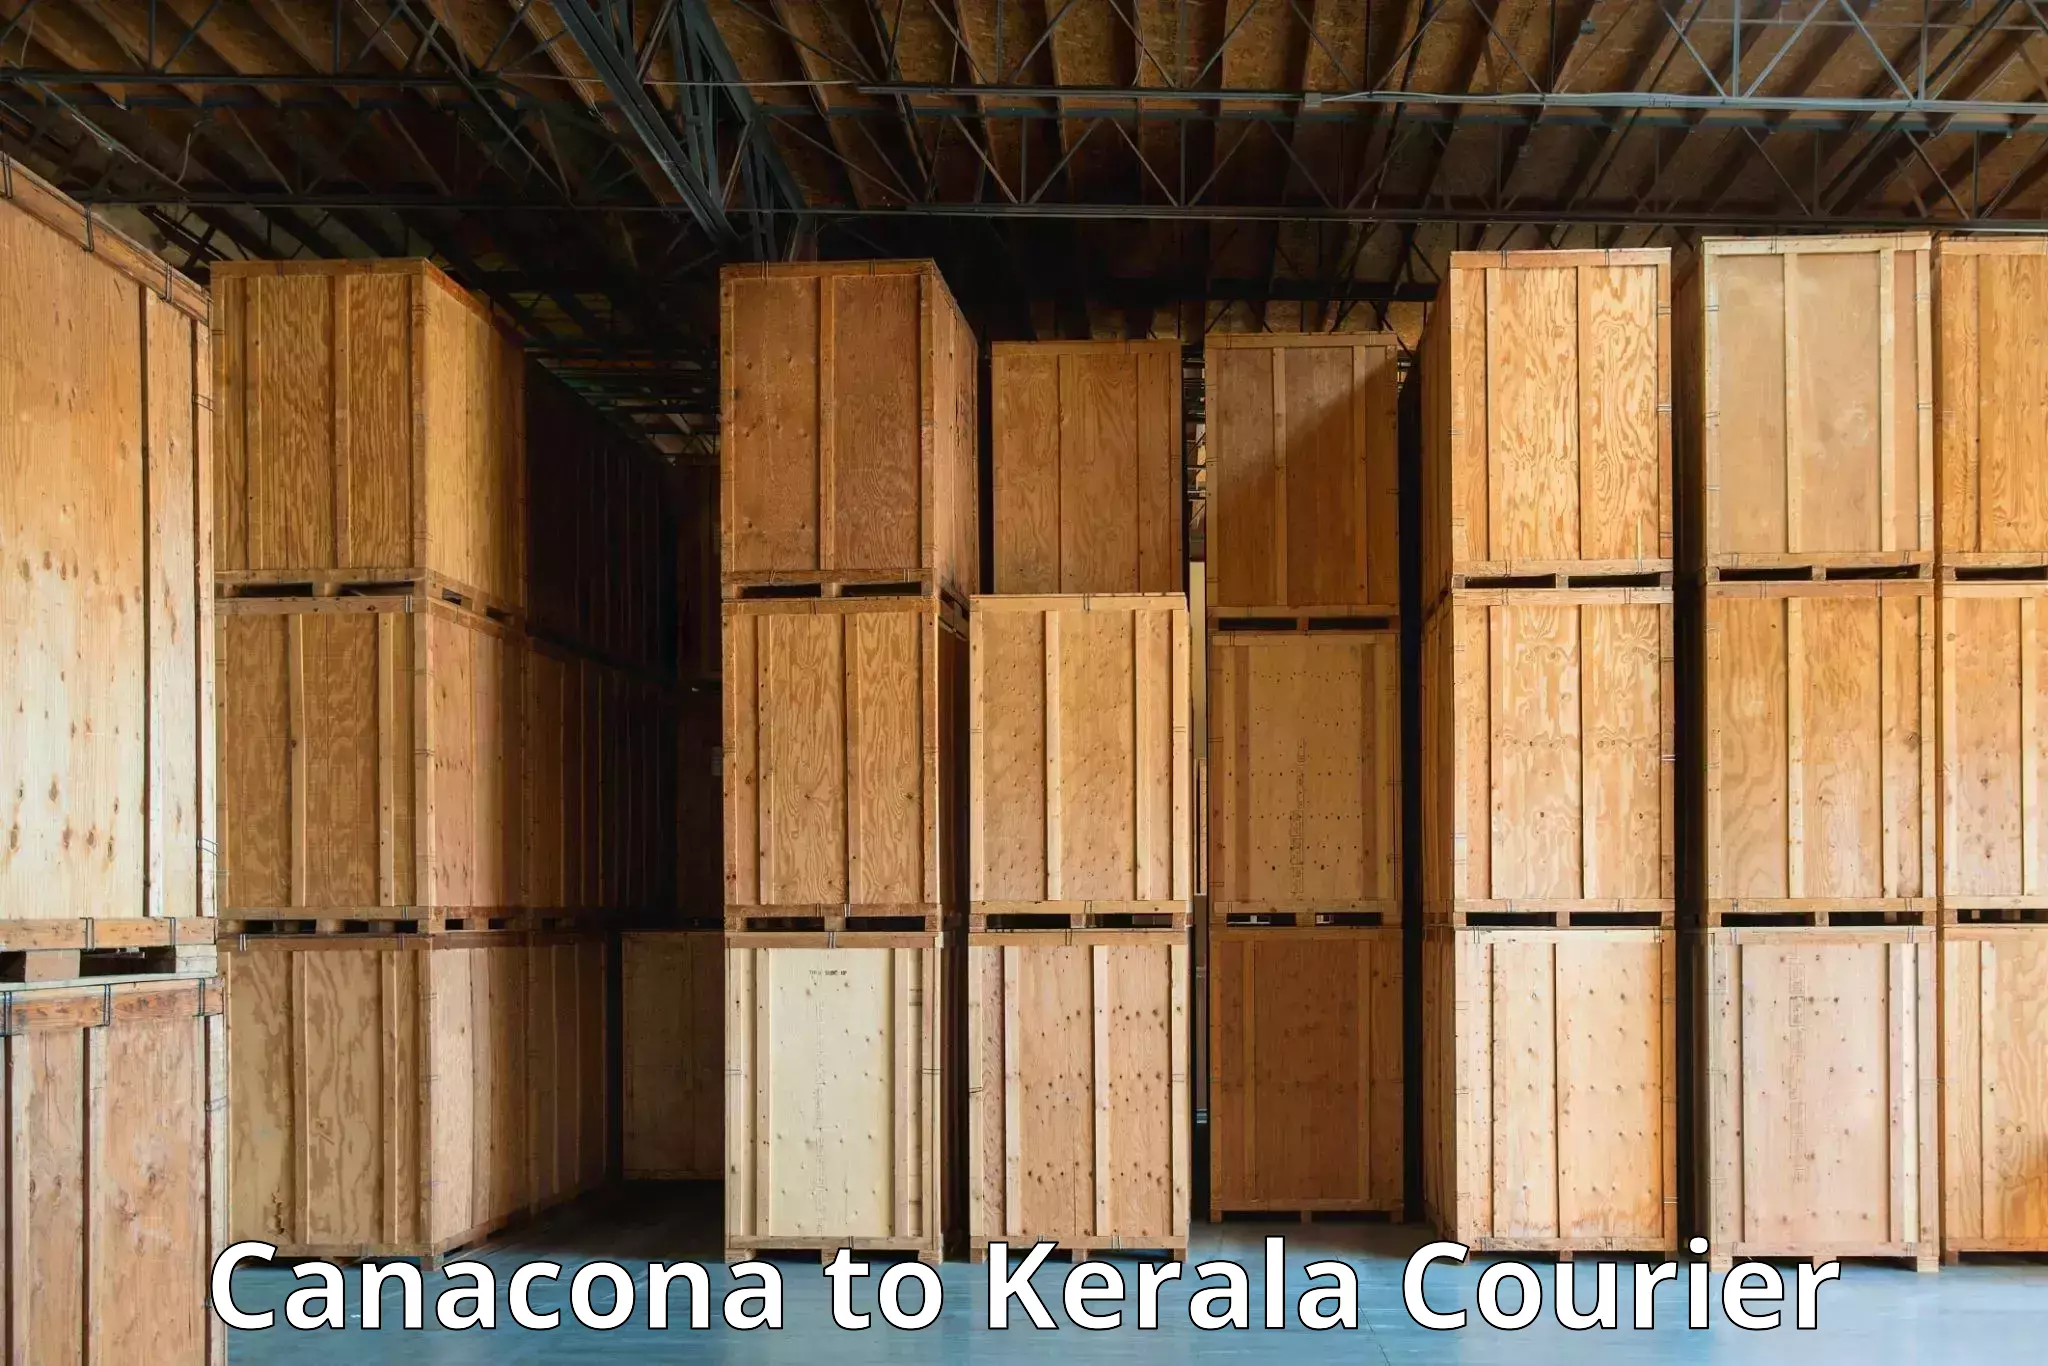 User-friendly courier app Canacona to Kalanjoor